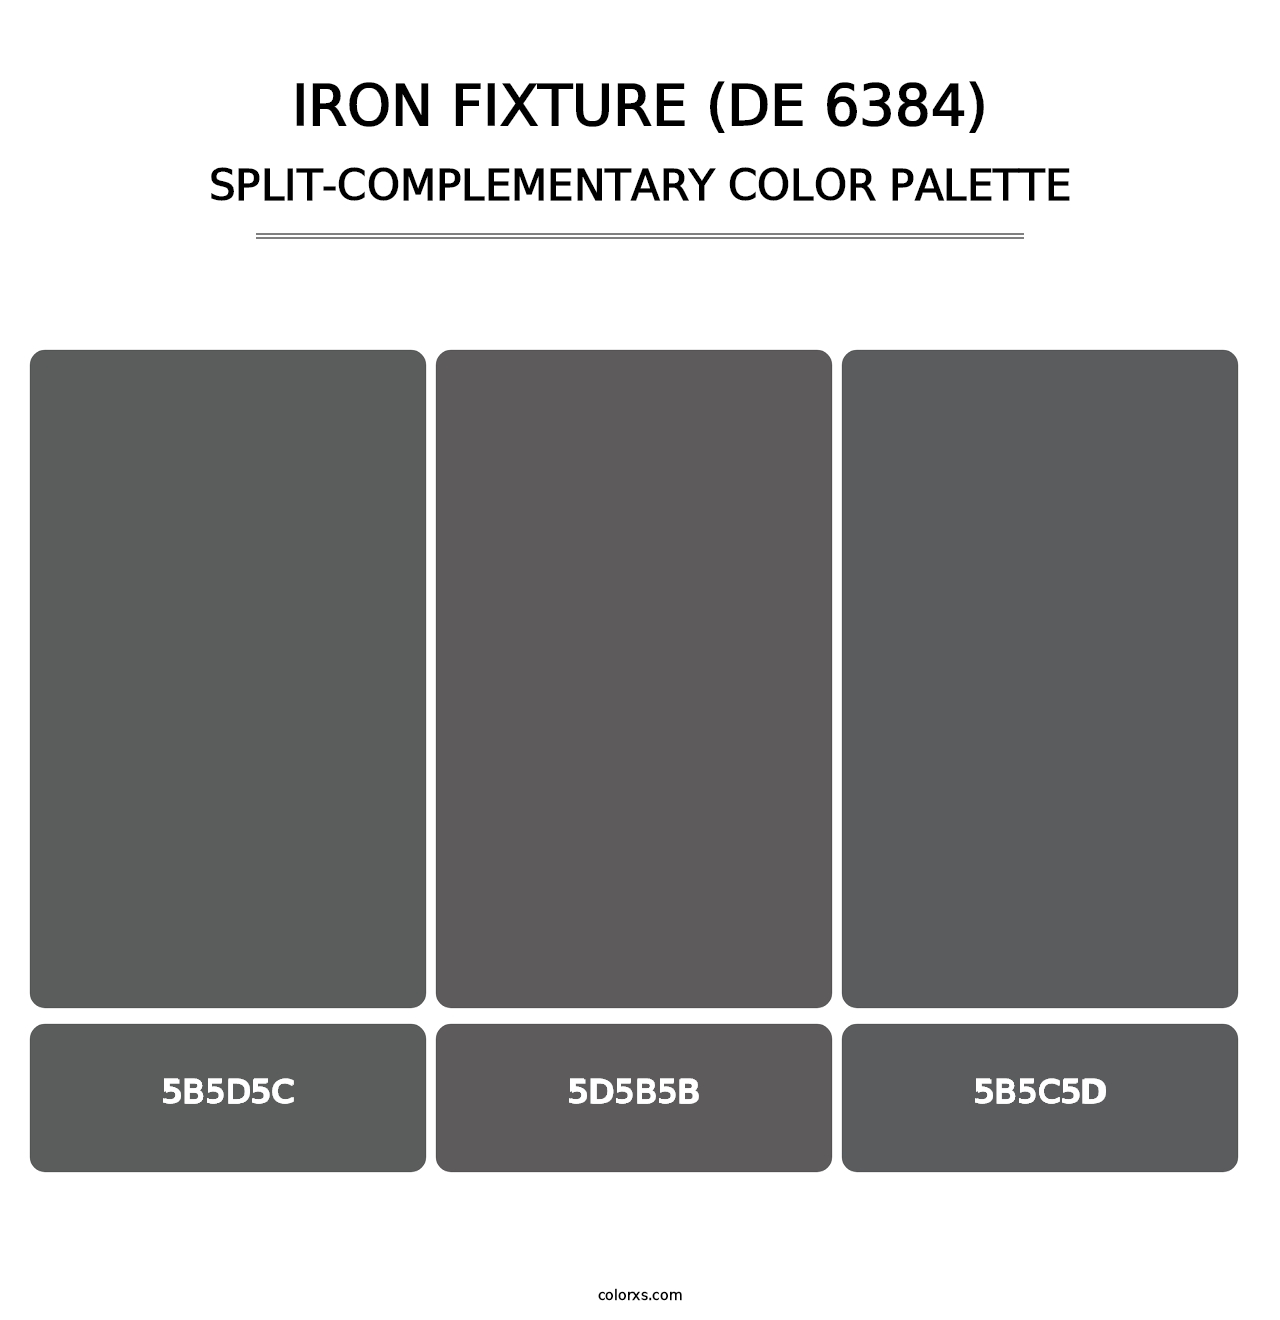 Iron Fixture (DE 6384) - Split-Complementary Color Palette